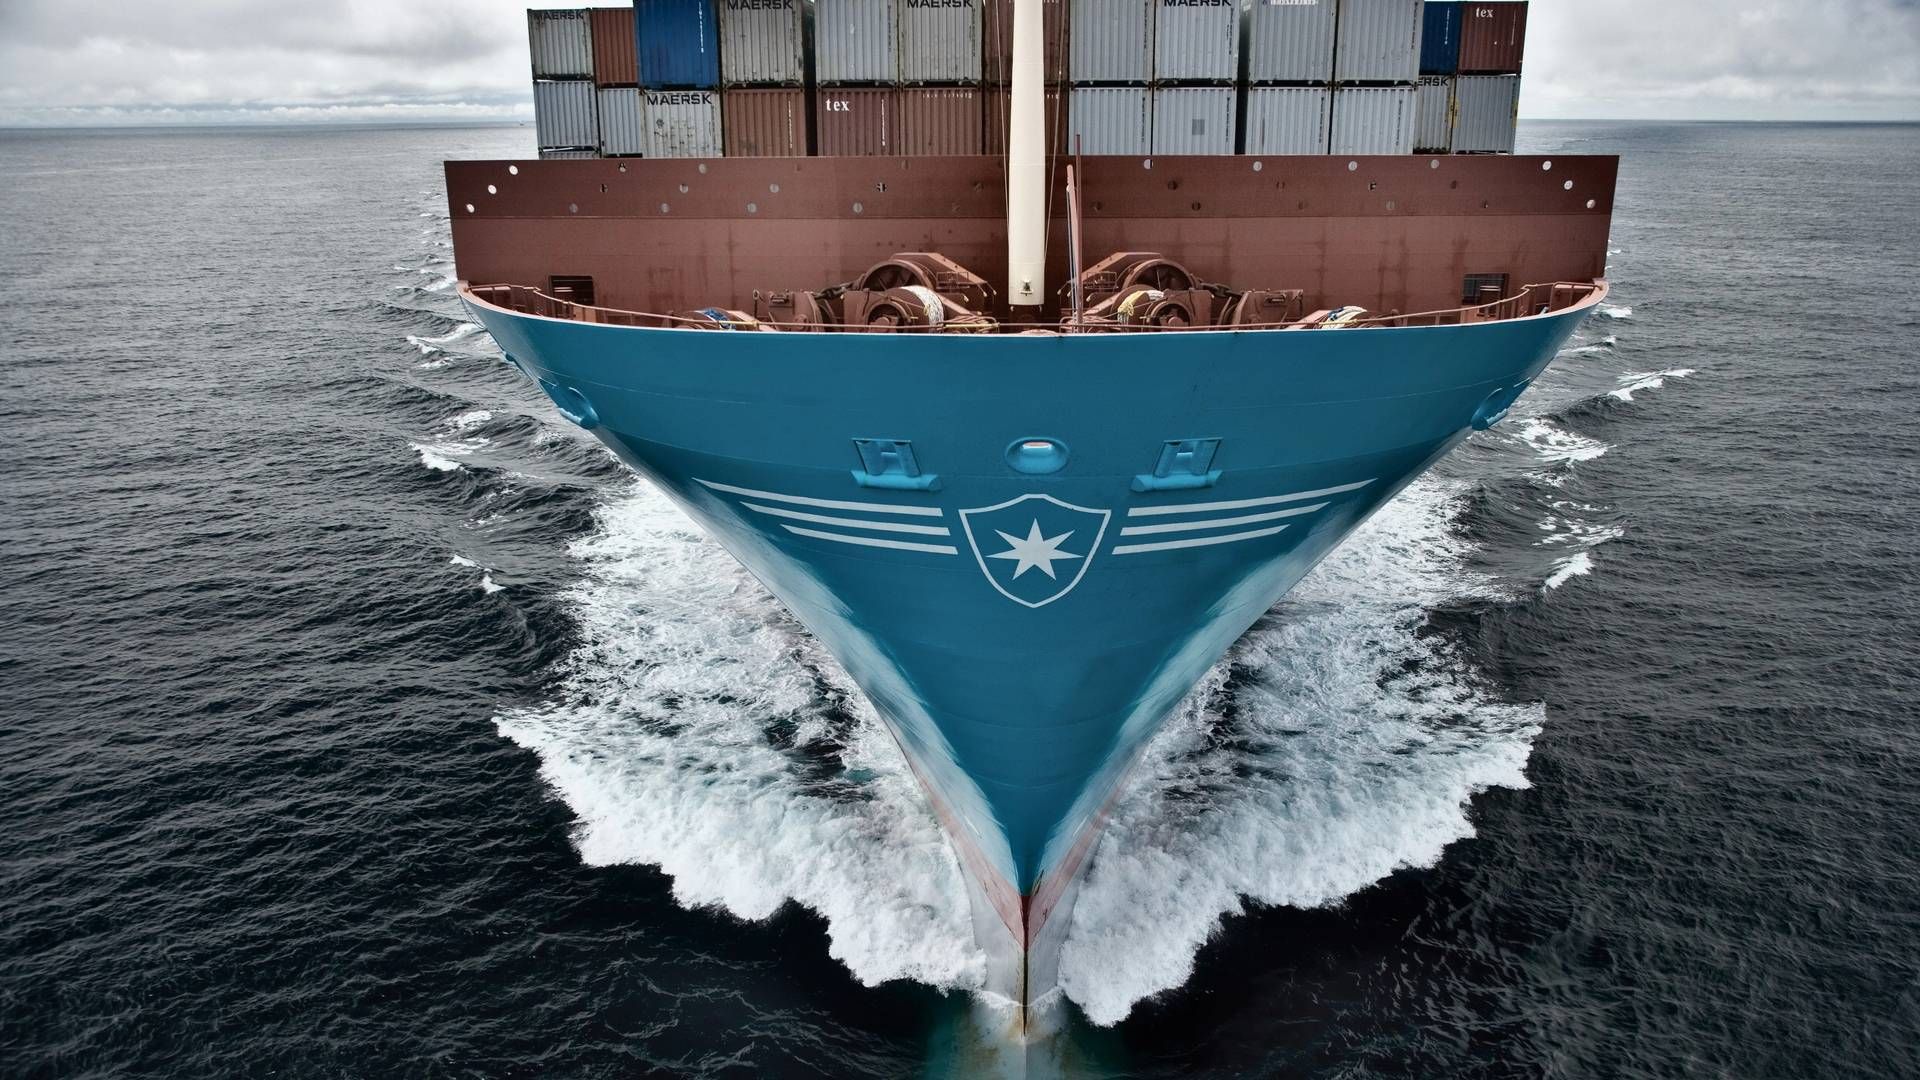 Mærks satser stadig på Metanol, selvom det kan blive en mangelvare. | Foto: PR / Maersk